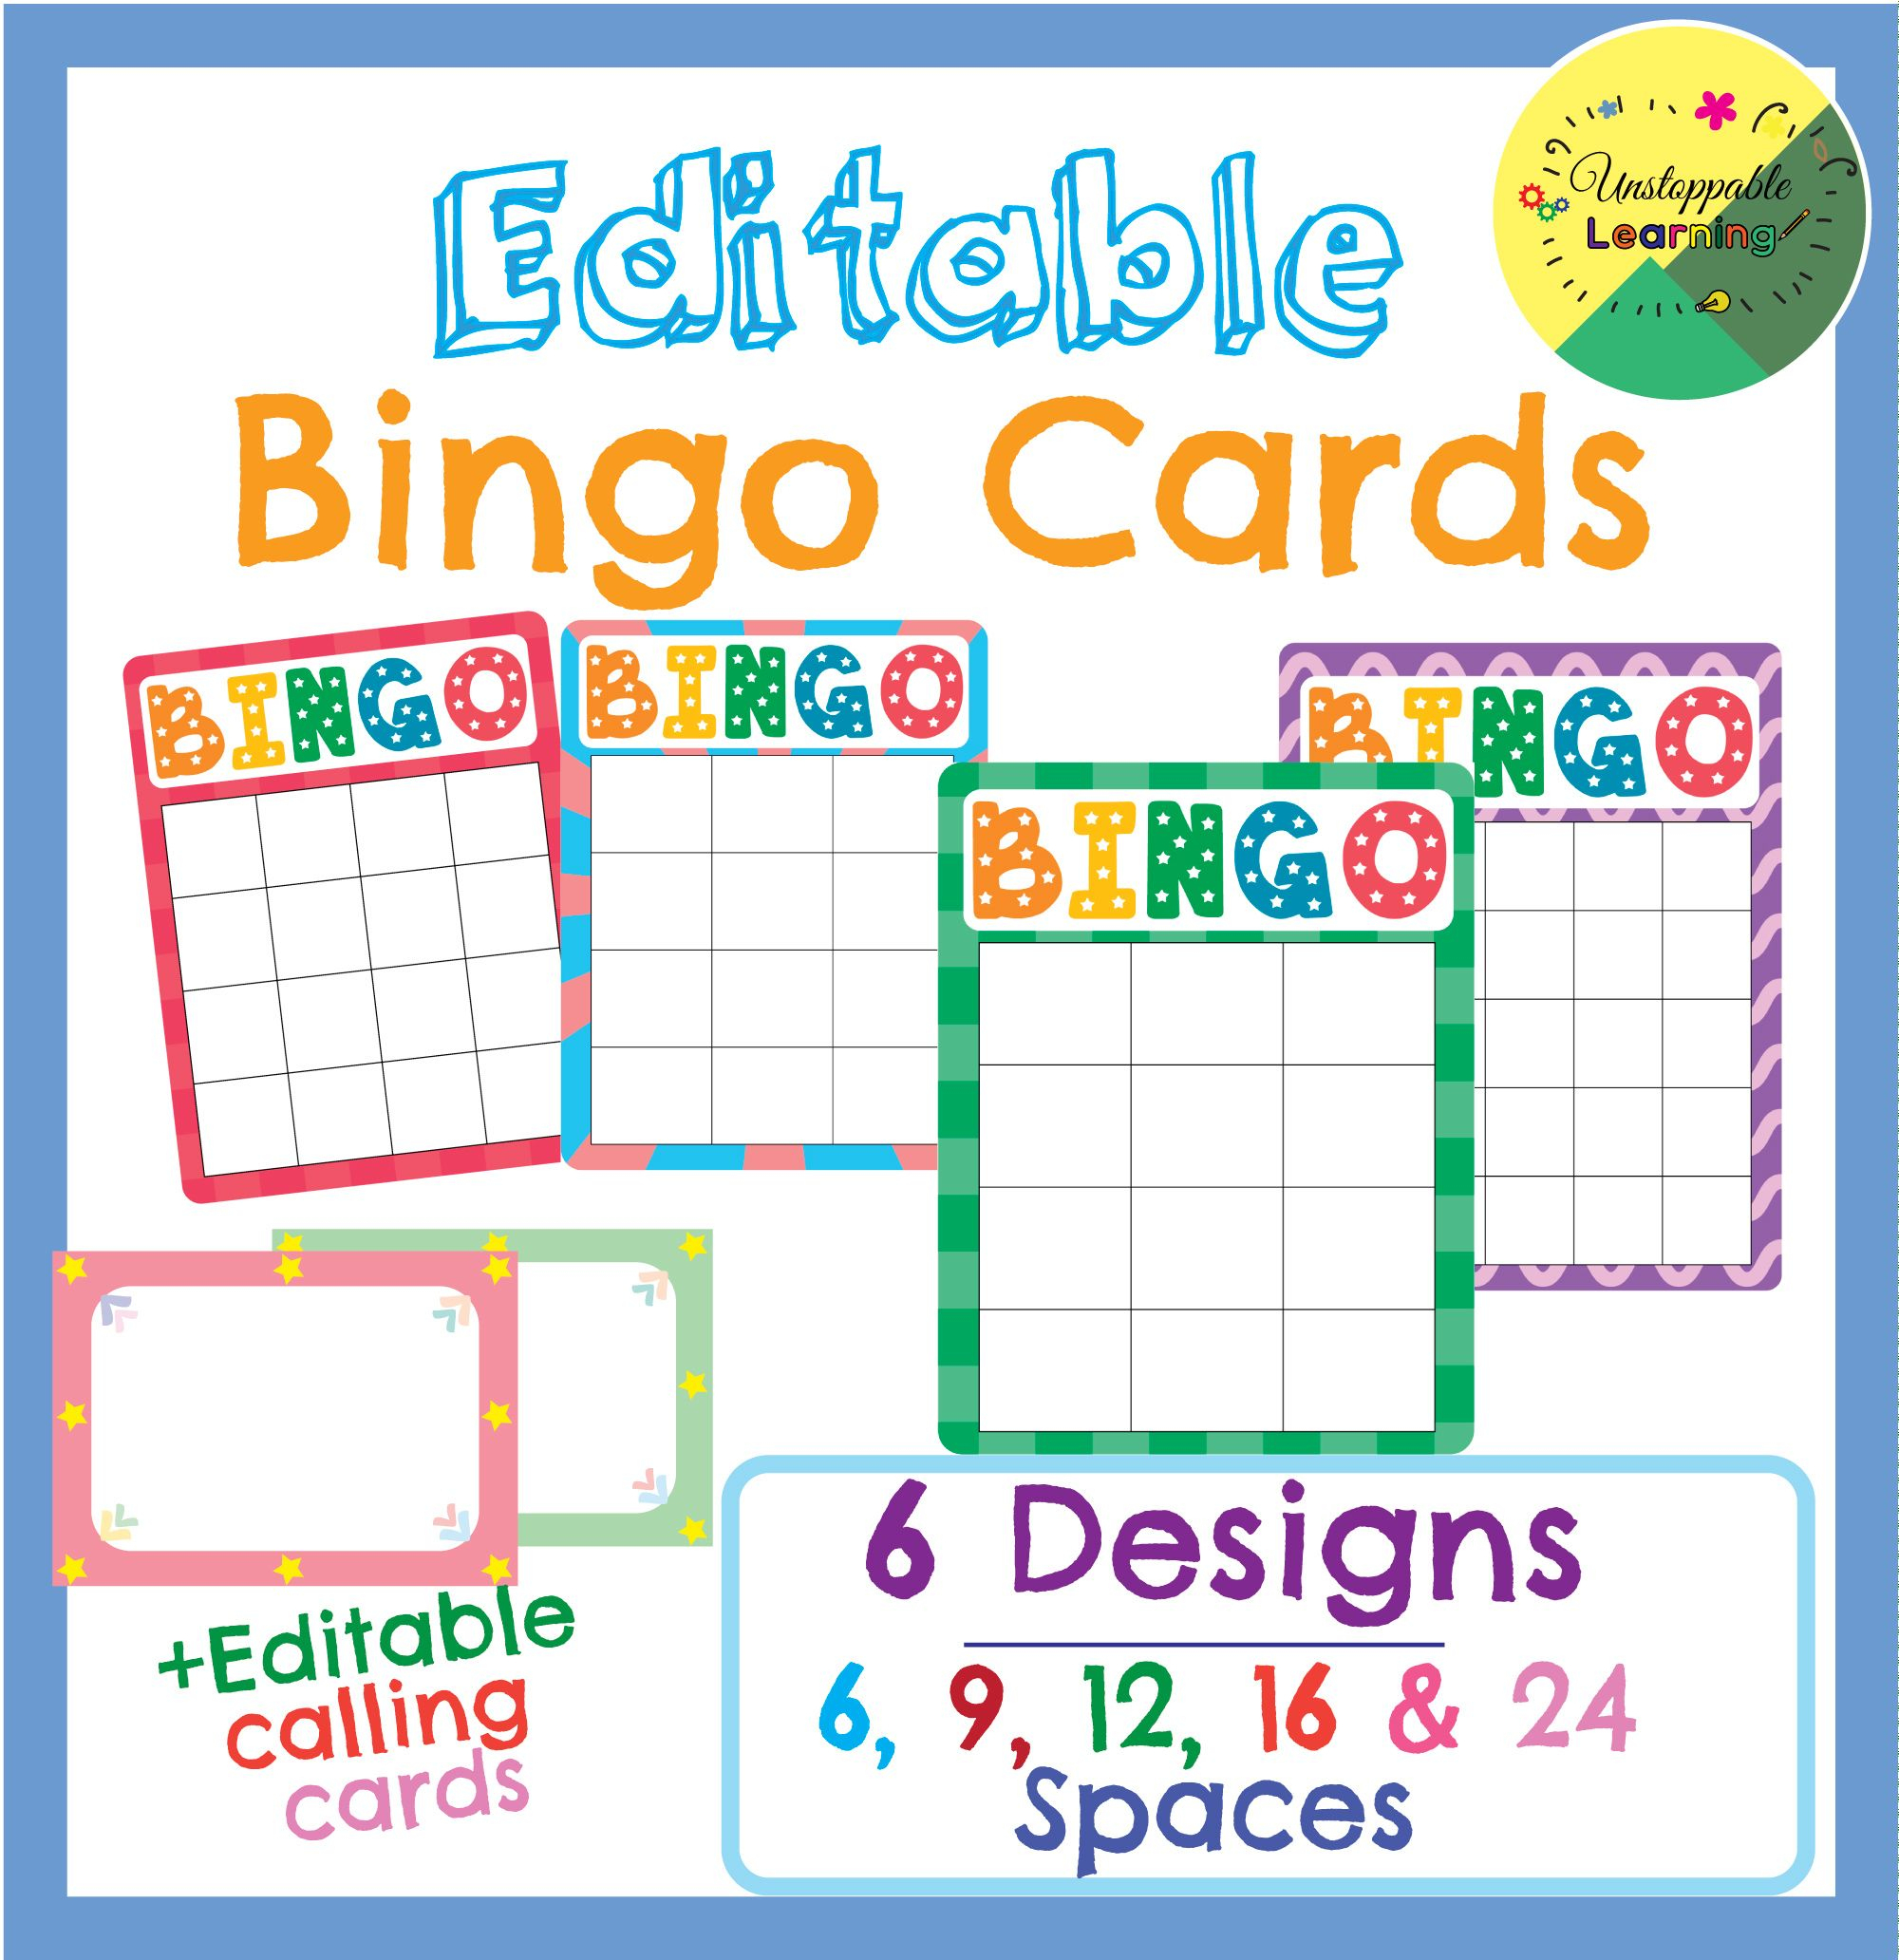 Editable Bingo Cards | Bingo Cards, Bingo Template, Bingo